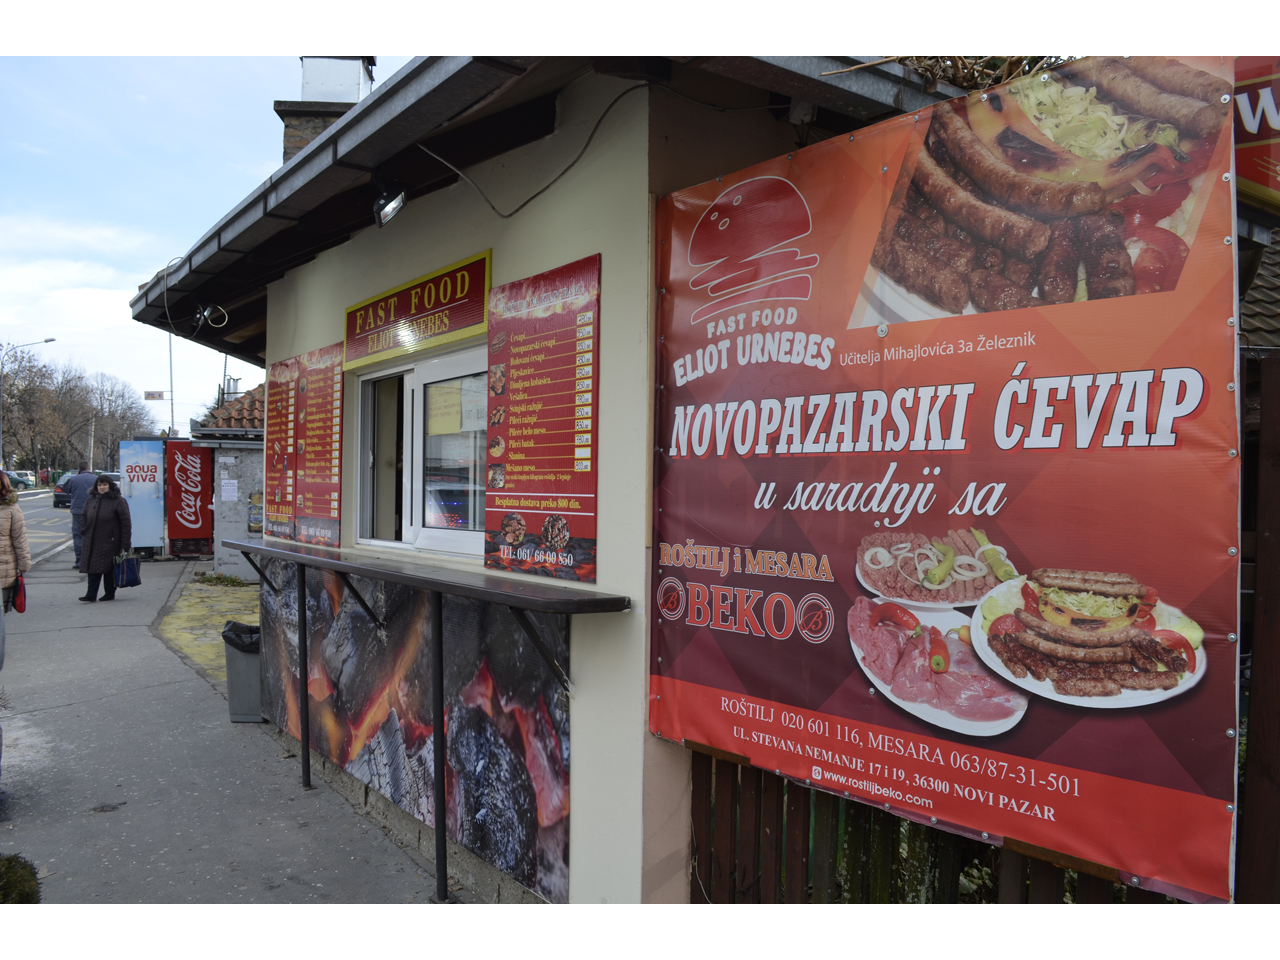 FAST FOOD ELIOT URNEBES Fast food Belgrade - Photo 1